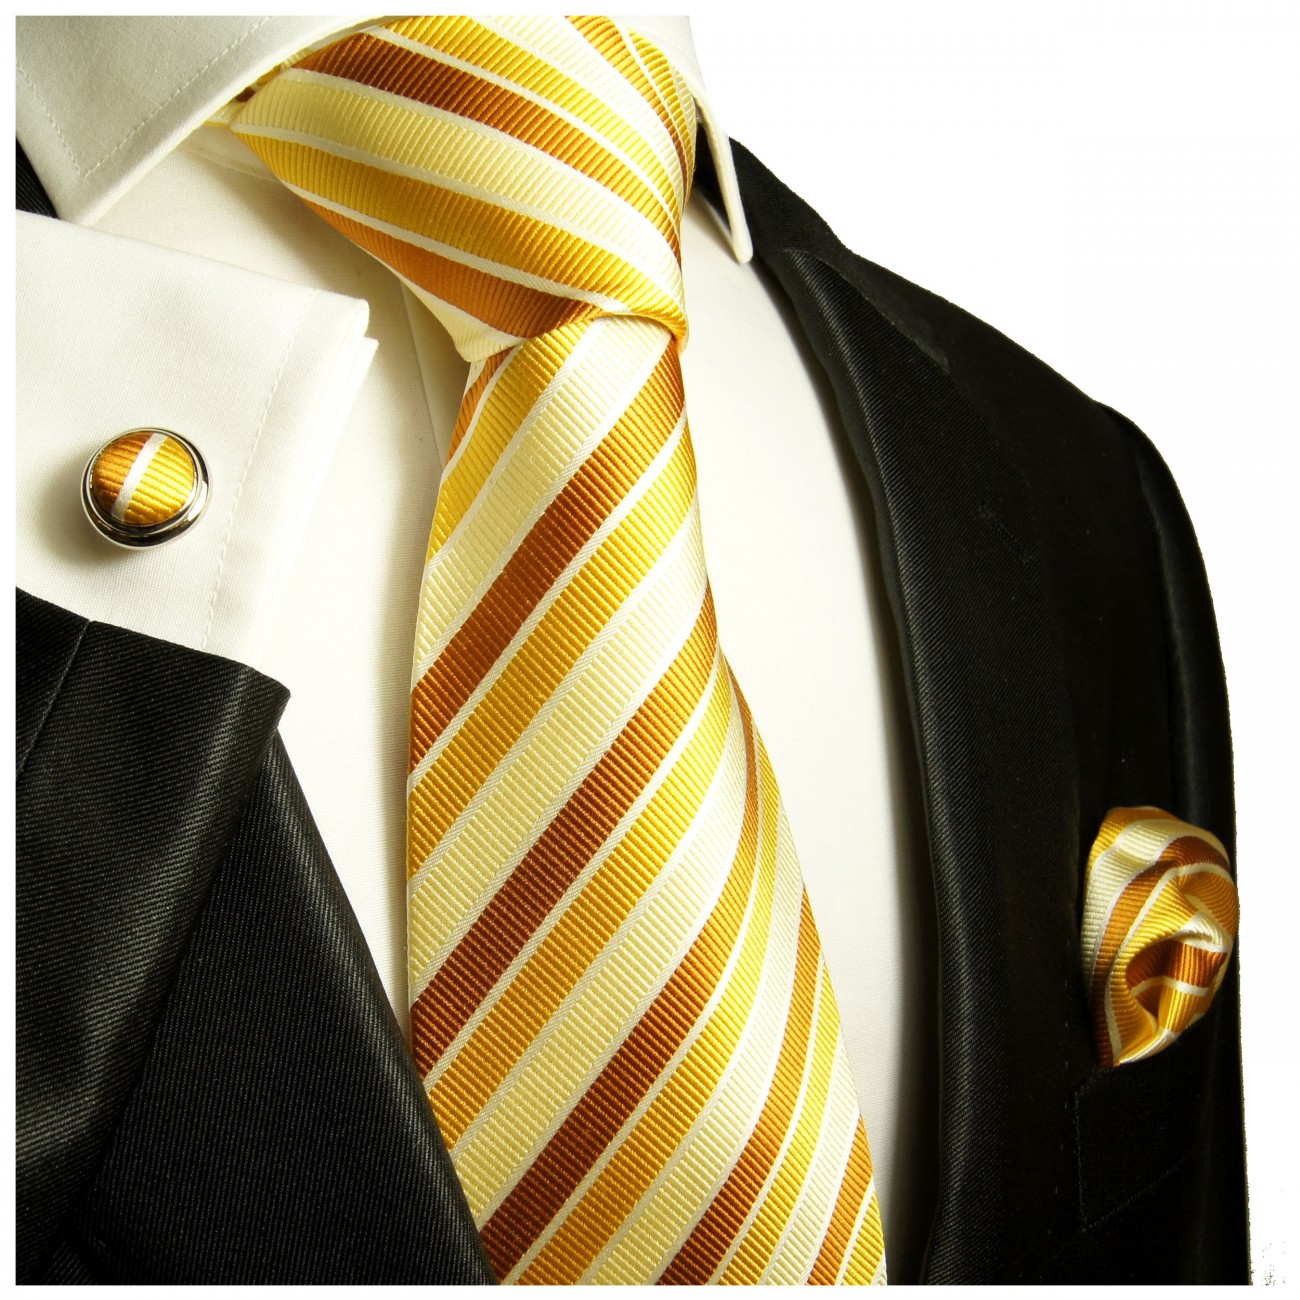 Krawatte gelb gold braun mit Einstecktuch und Manschettenknöpfe